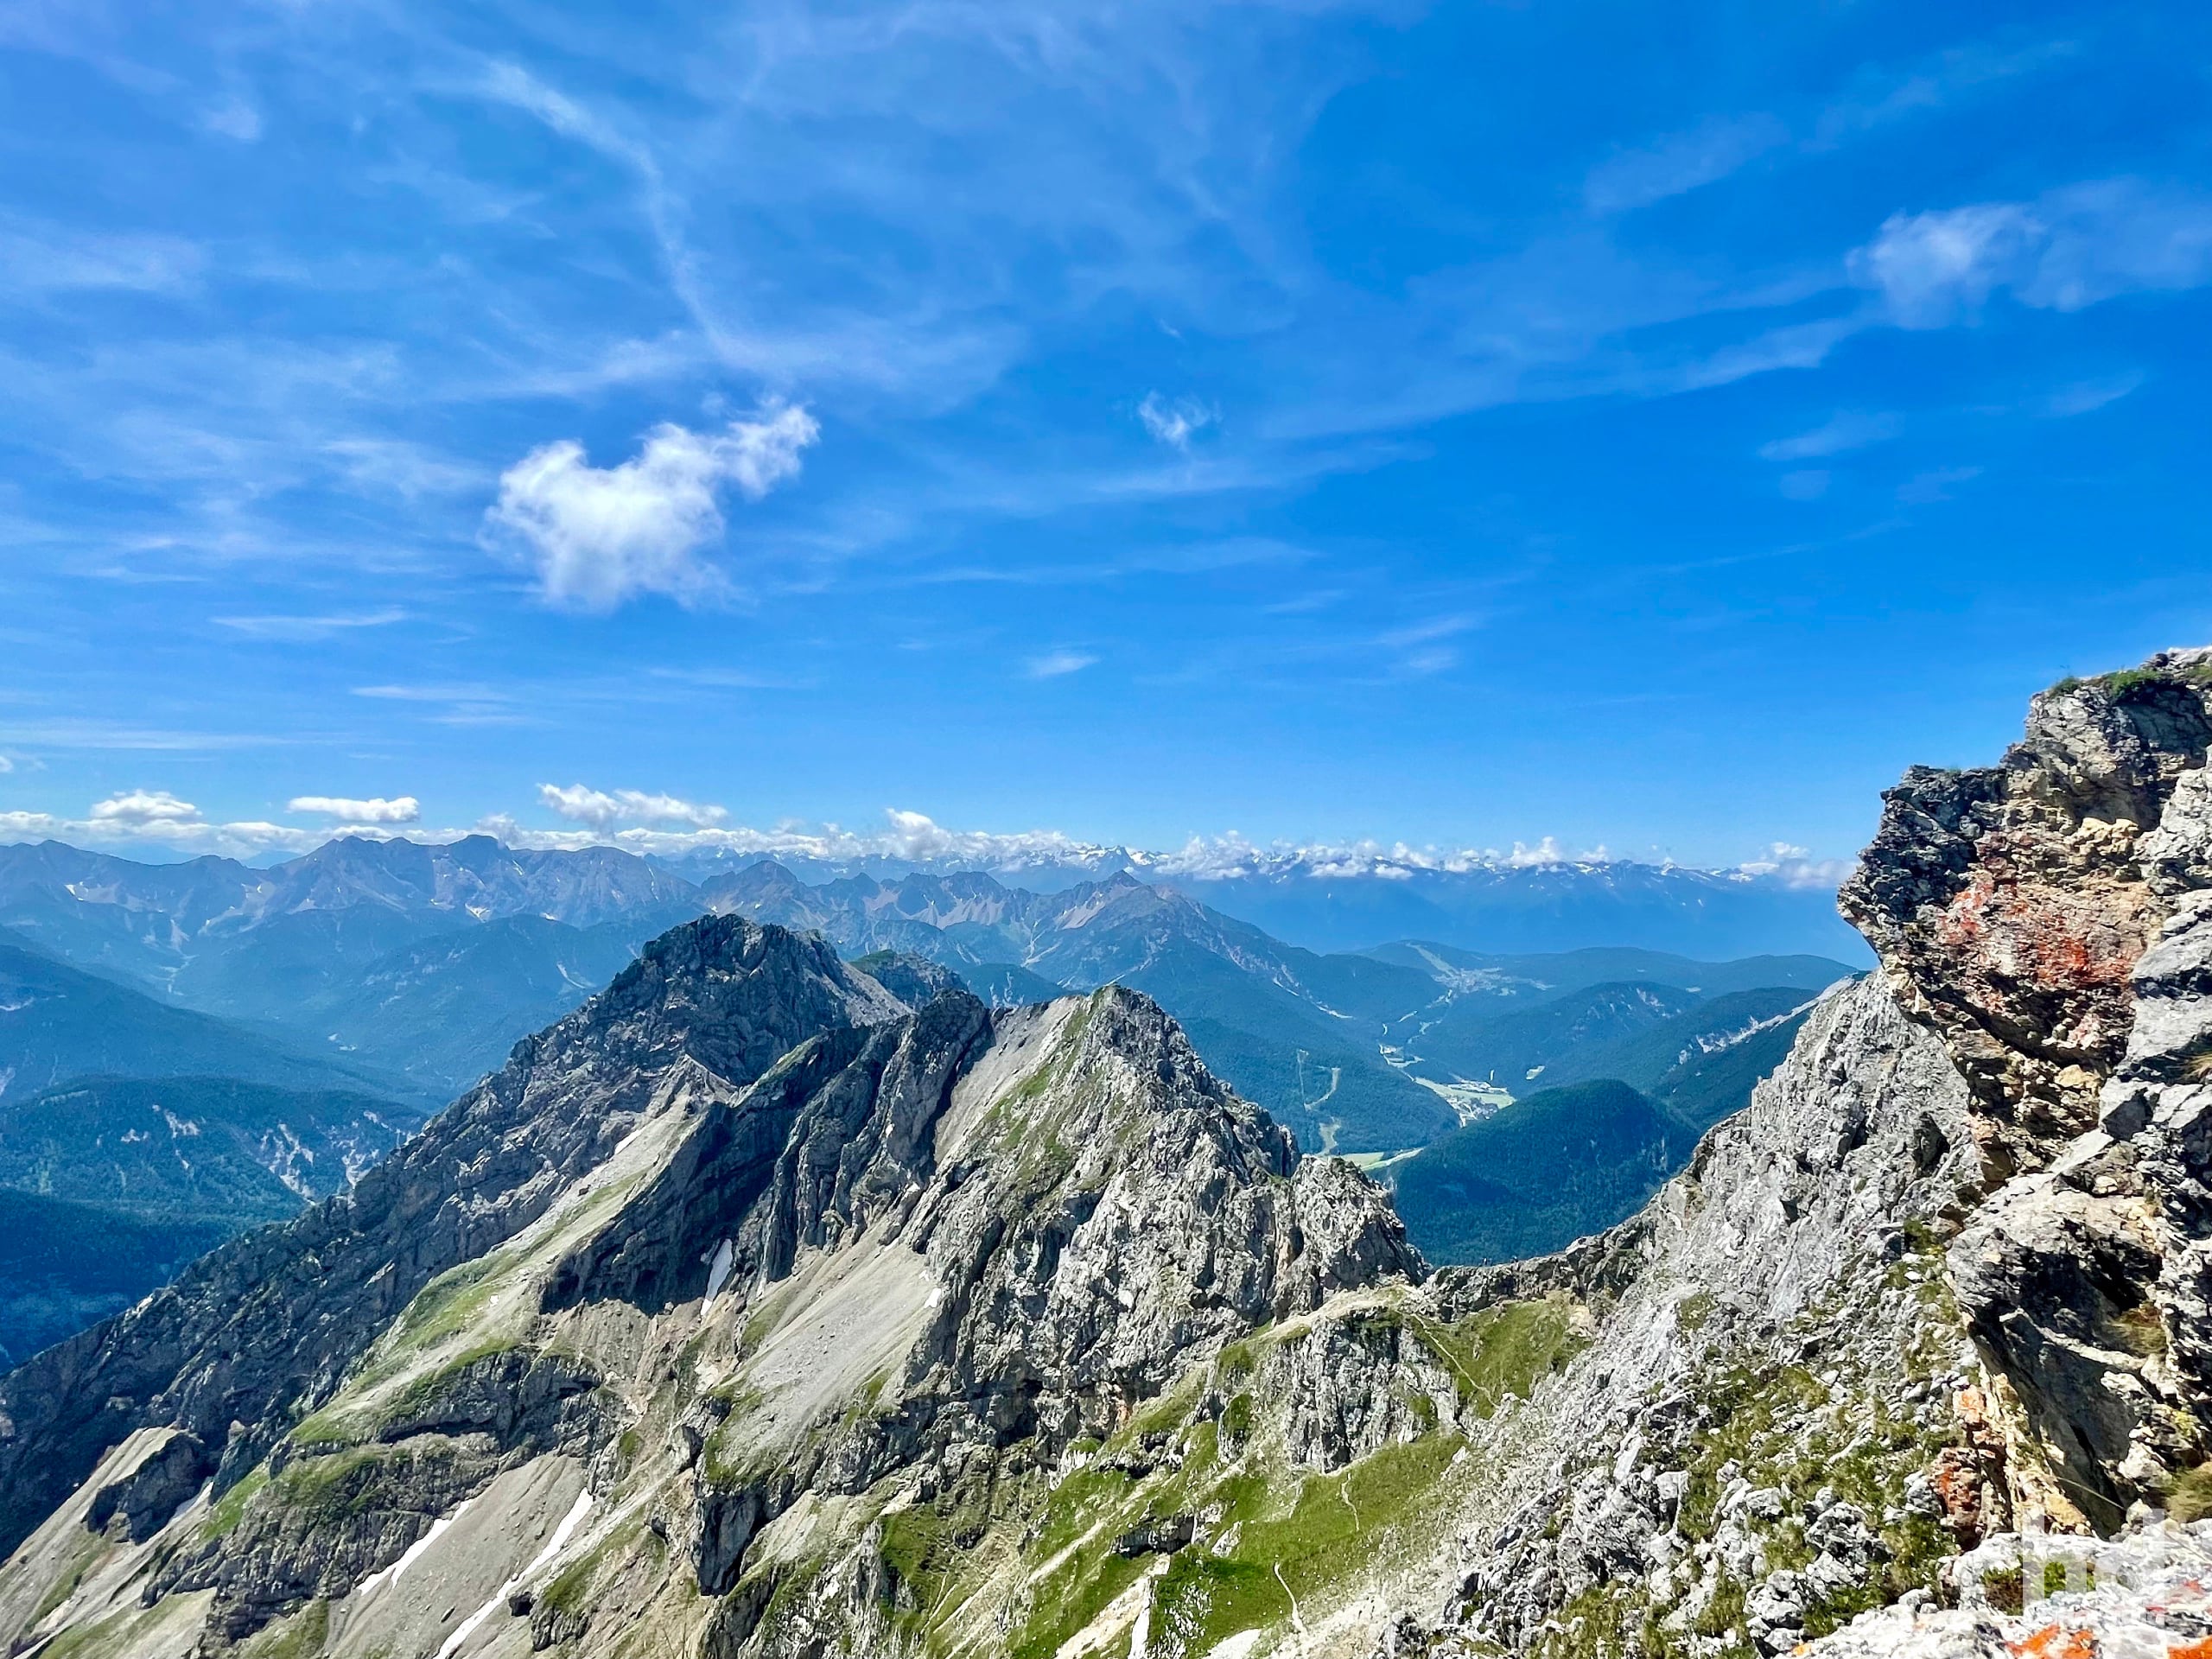 Von der Bergspitze betrachtet einige Bergspitzen des Karwendelgebirges (Blickrichtung Nord/Nord-Ost)